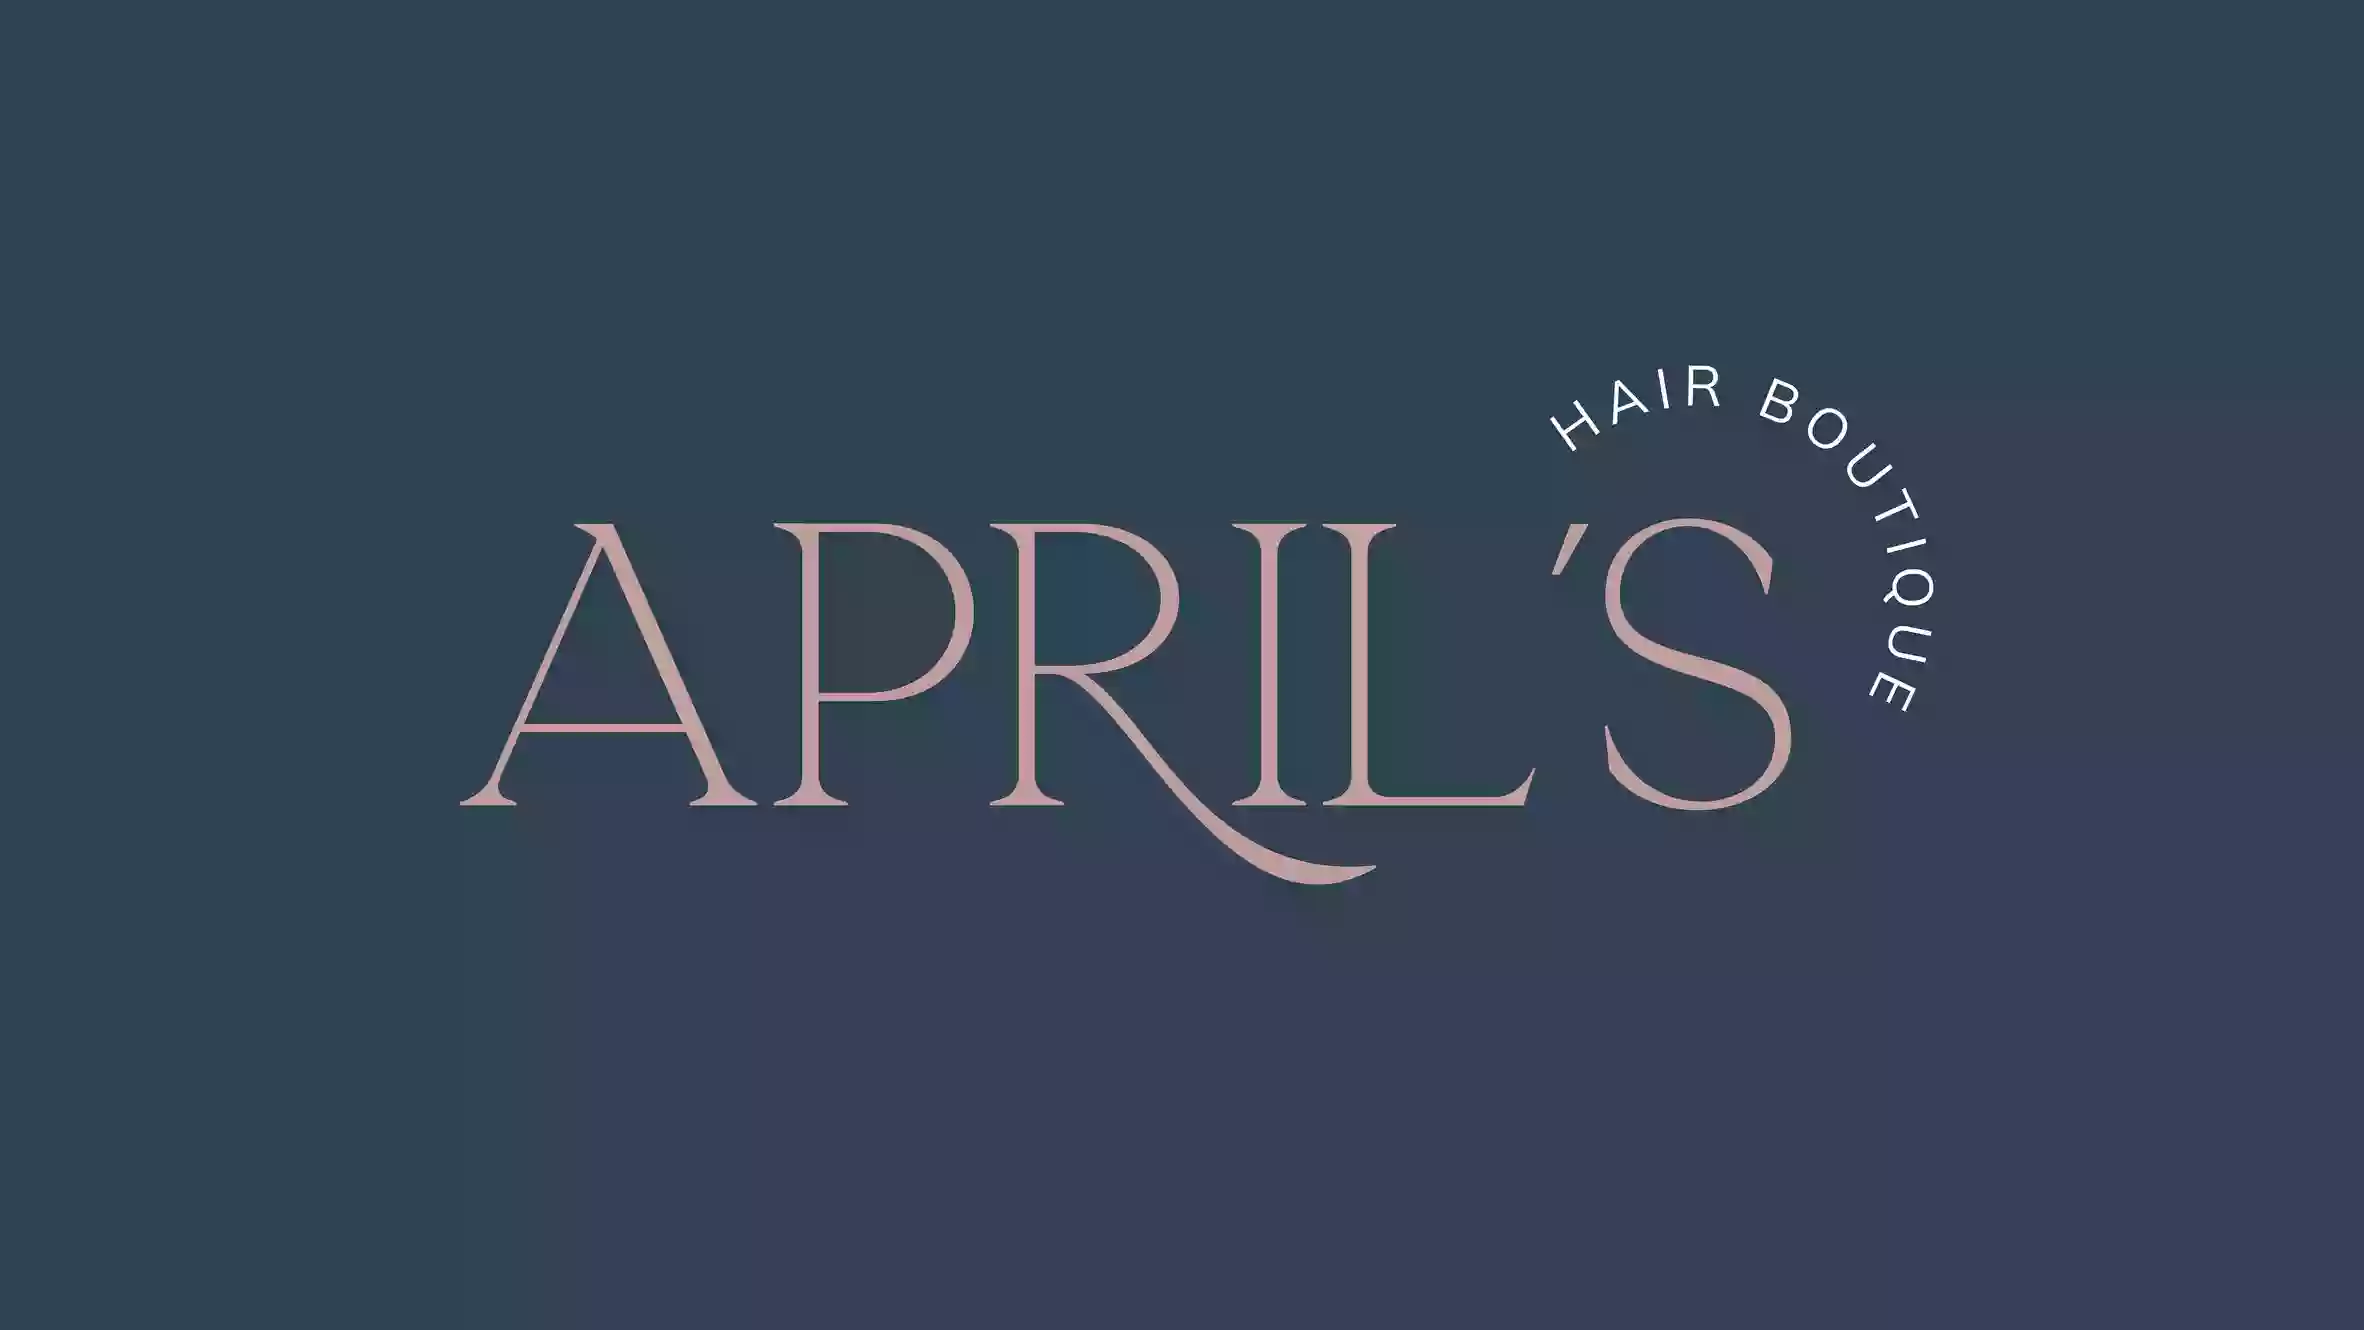 April's Hair Boutique